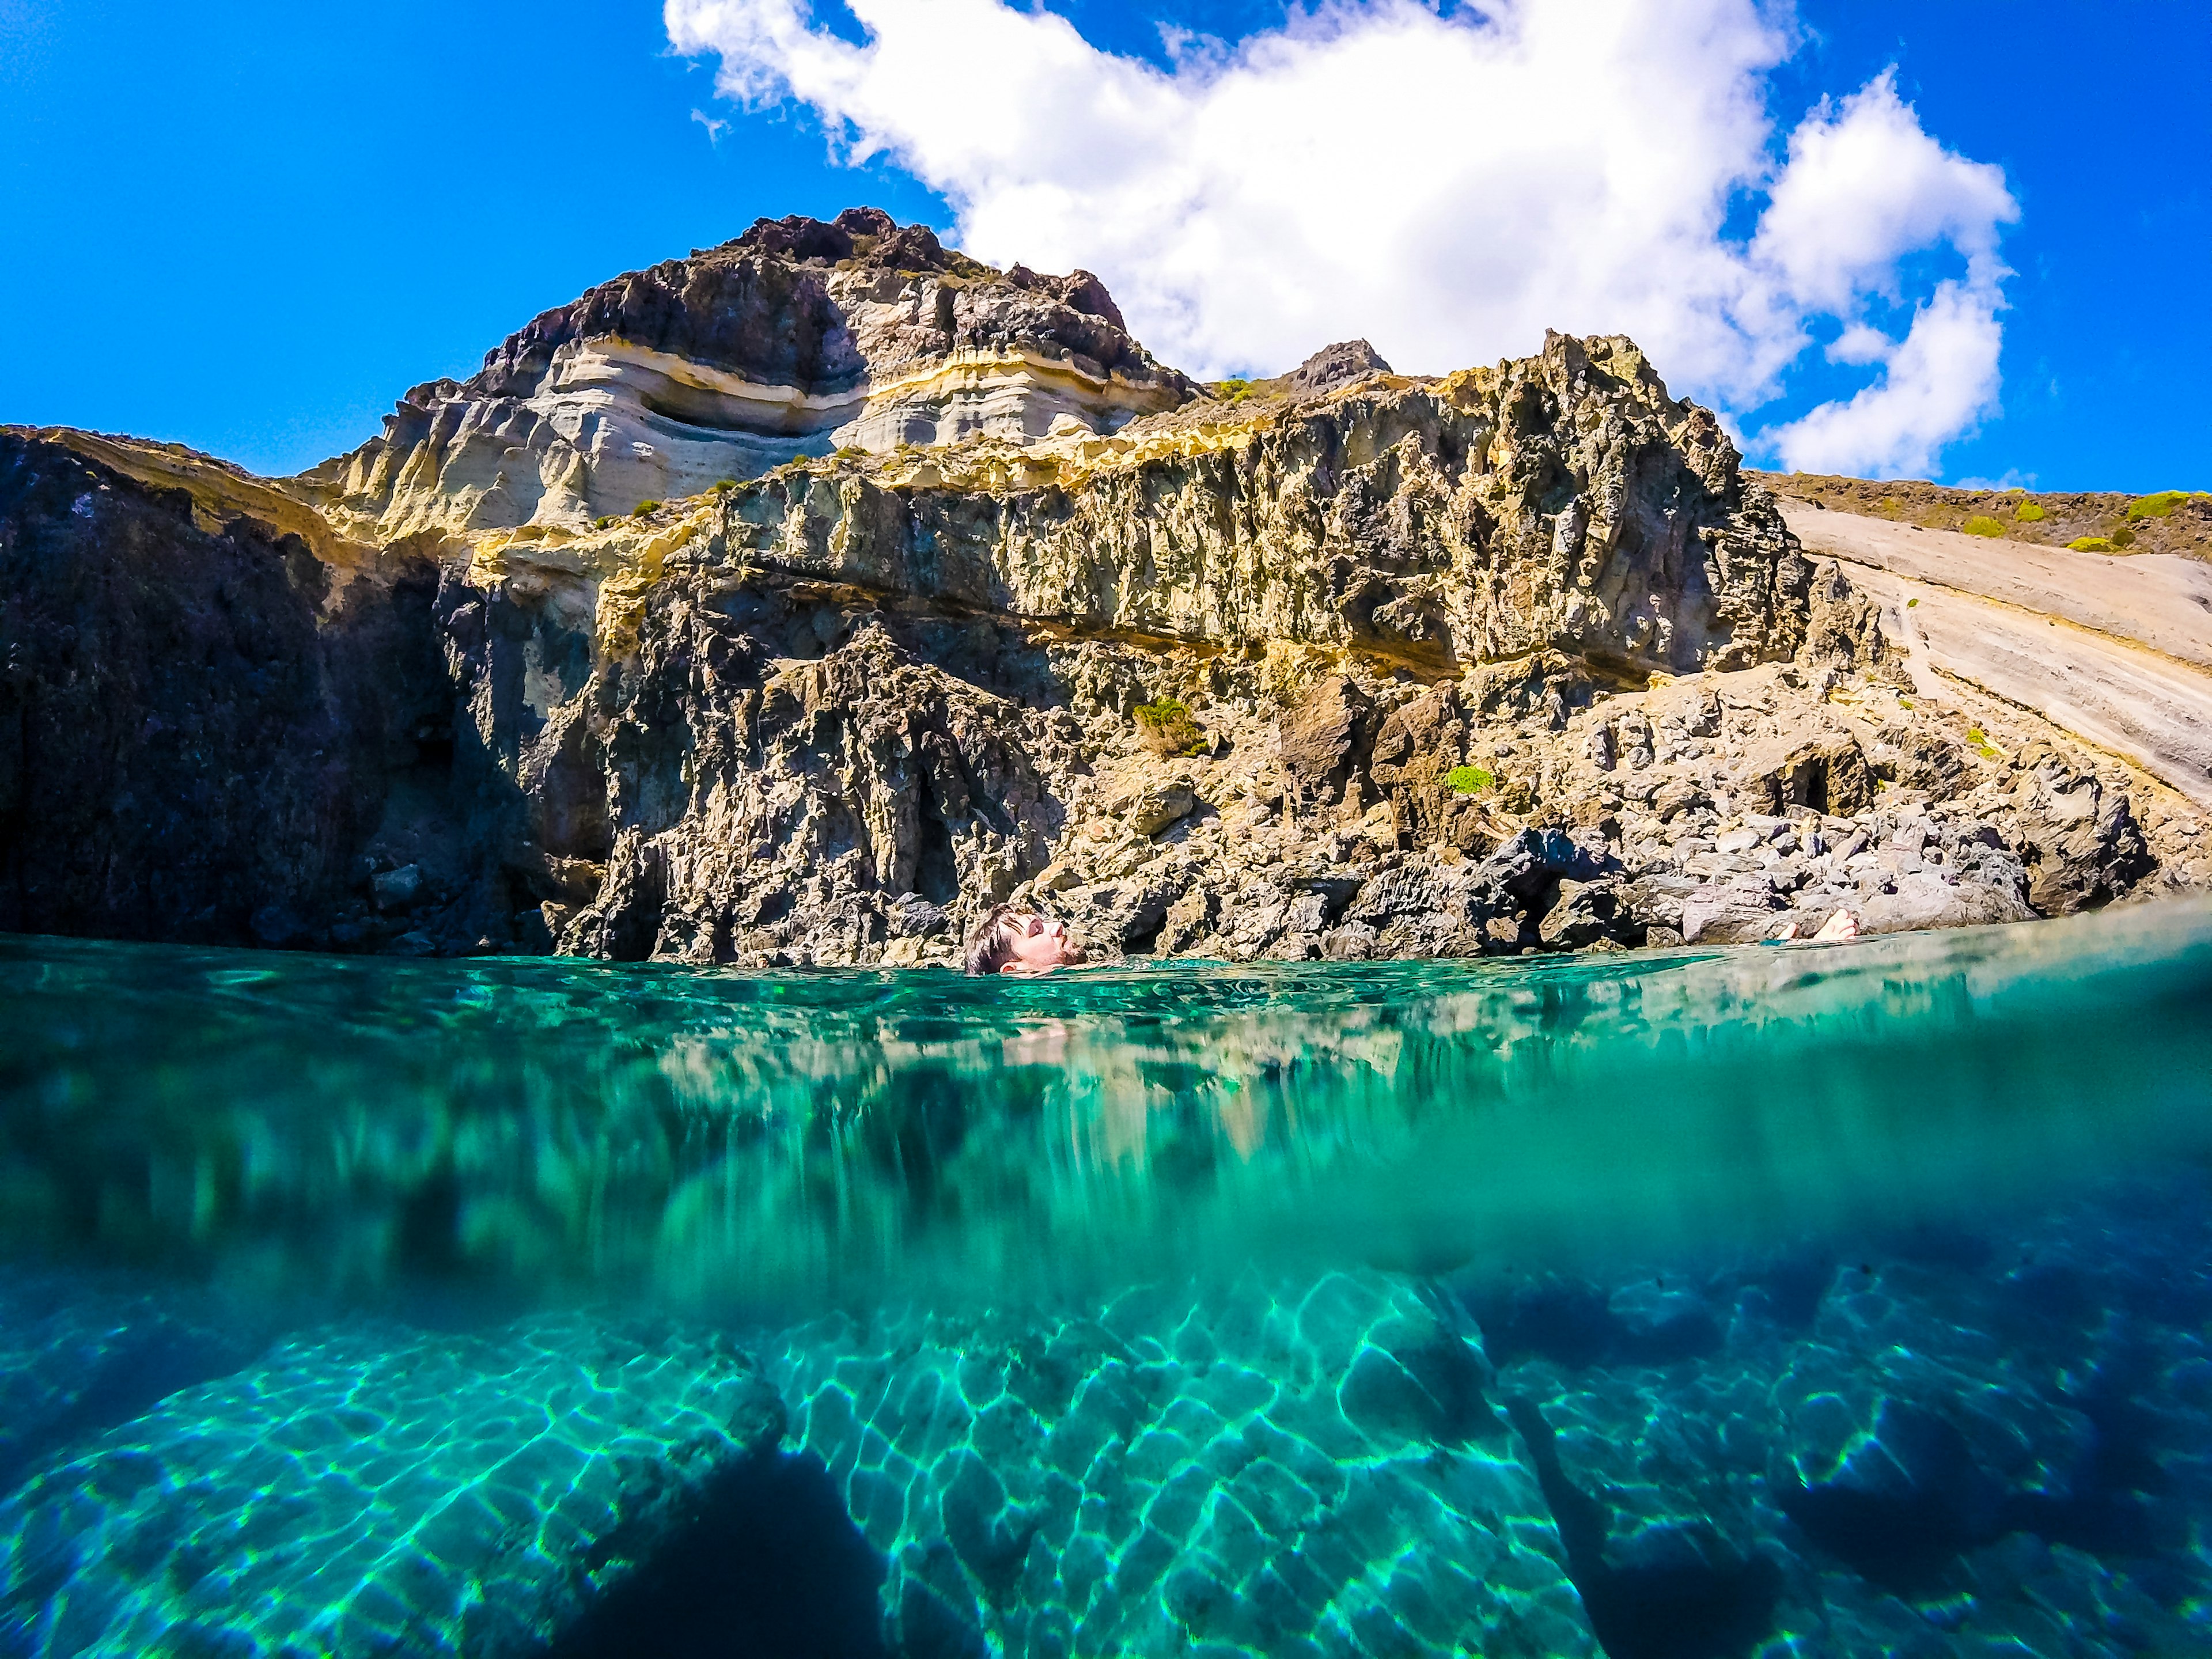 il mare turchese a Pantelleria, un'isola del mediterraneo da vedere assolutamente